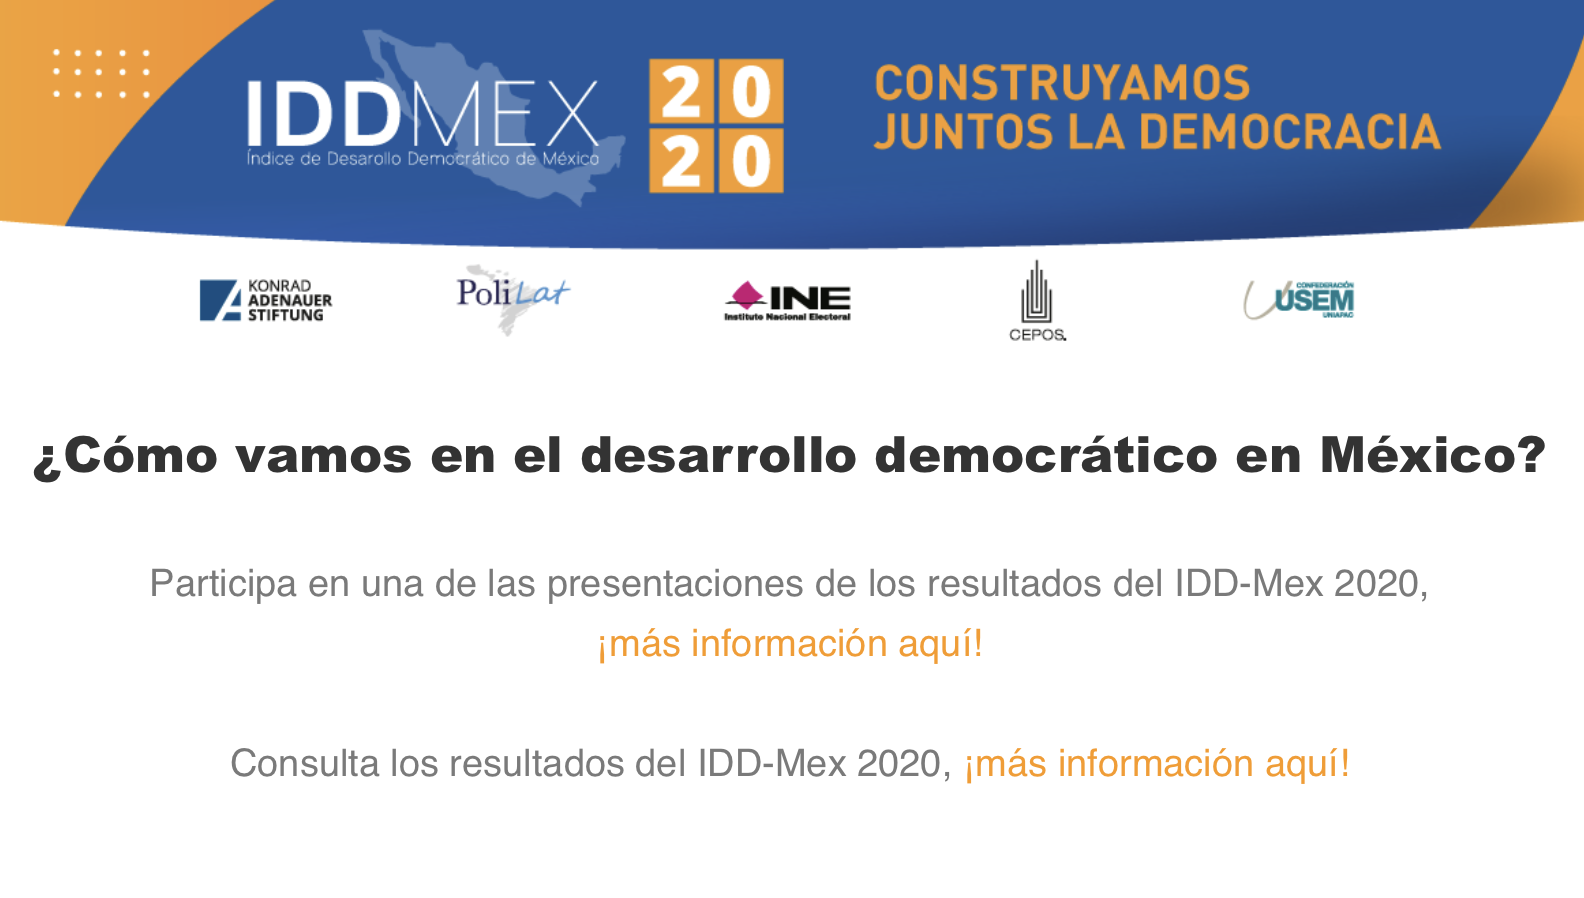 Ciudad de México en retroceso en el IDD-Mex 2020